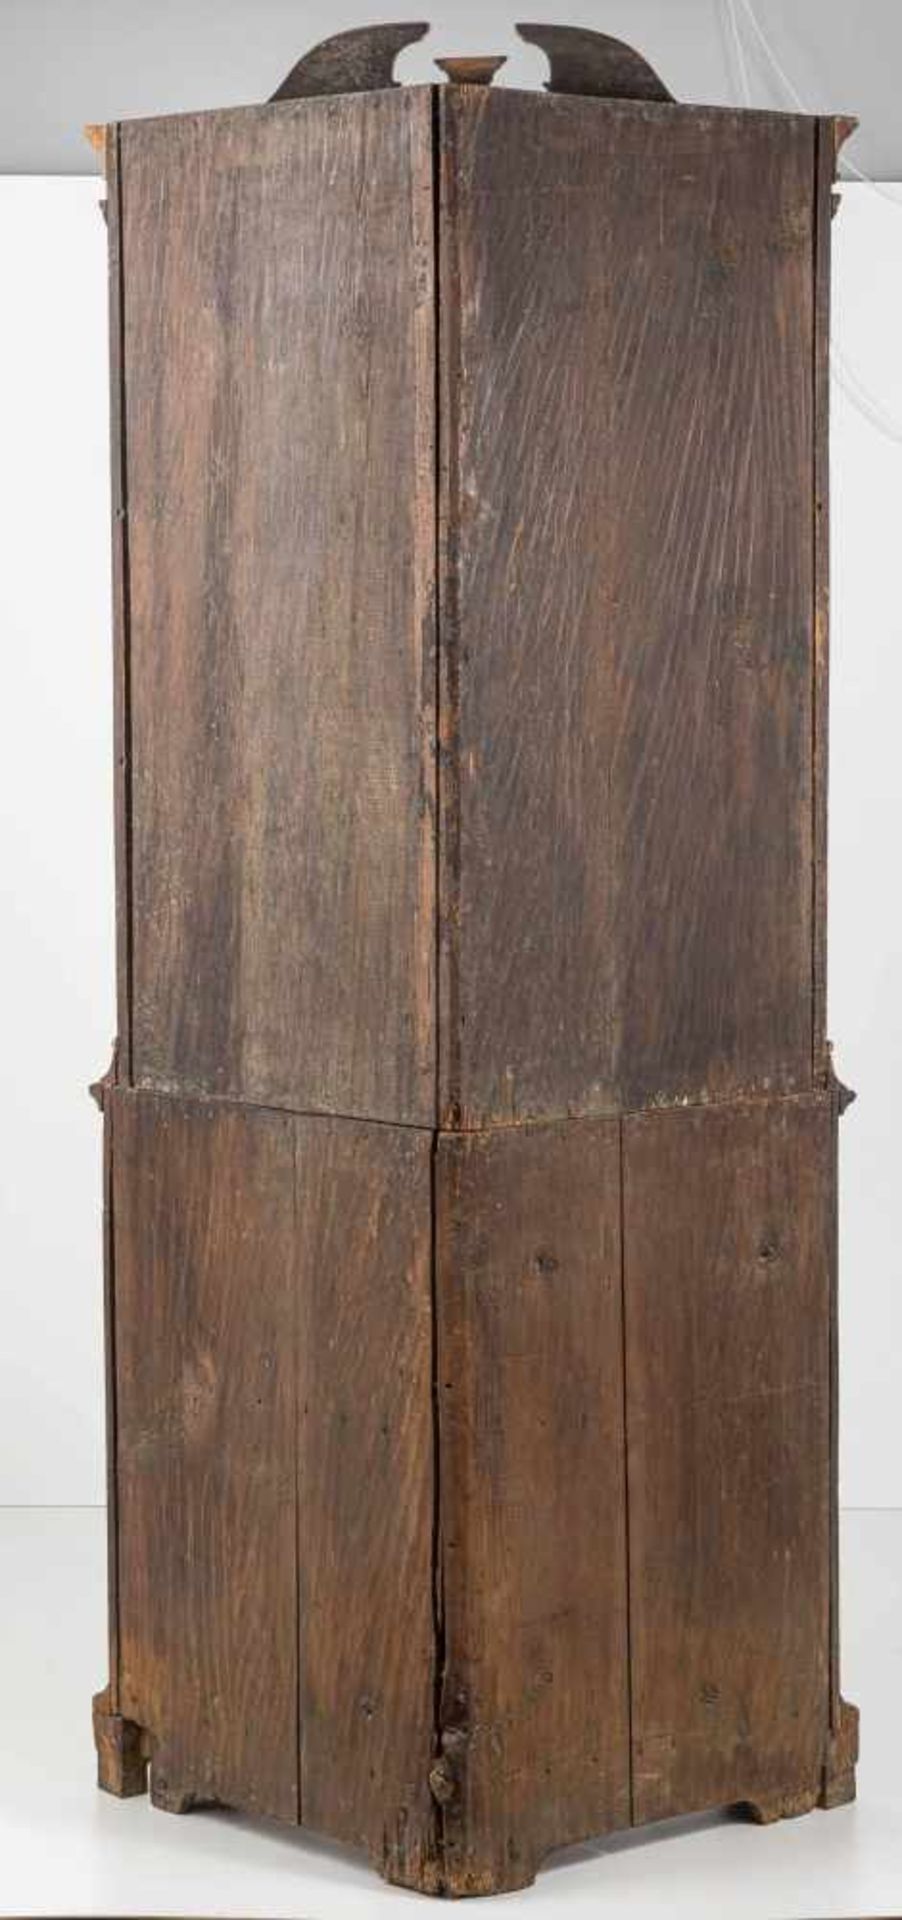 Barocker Eckschrank Norddeutsch, 18. Jh.Holz, dunkel gebeizt. Zweiteiliger Korpus mit - Bild 2 aus 2